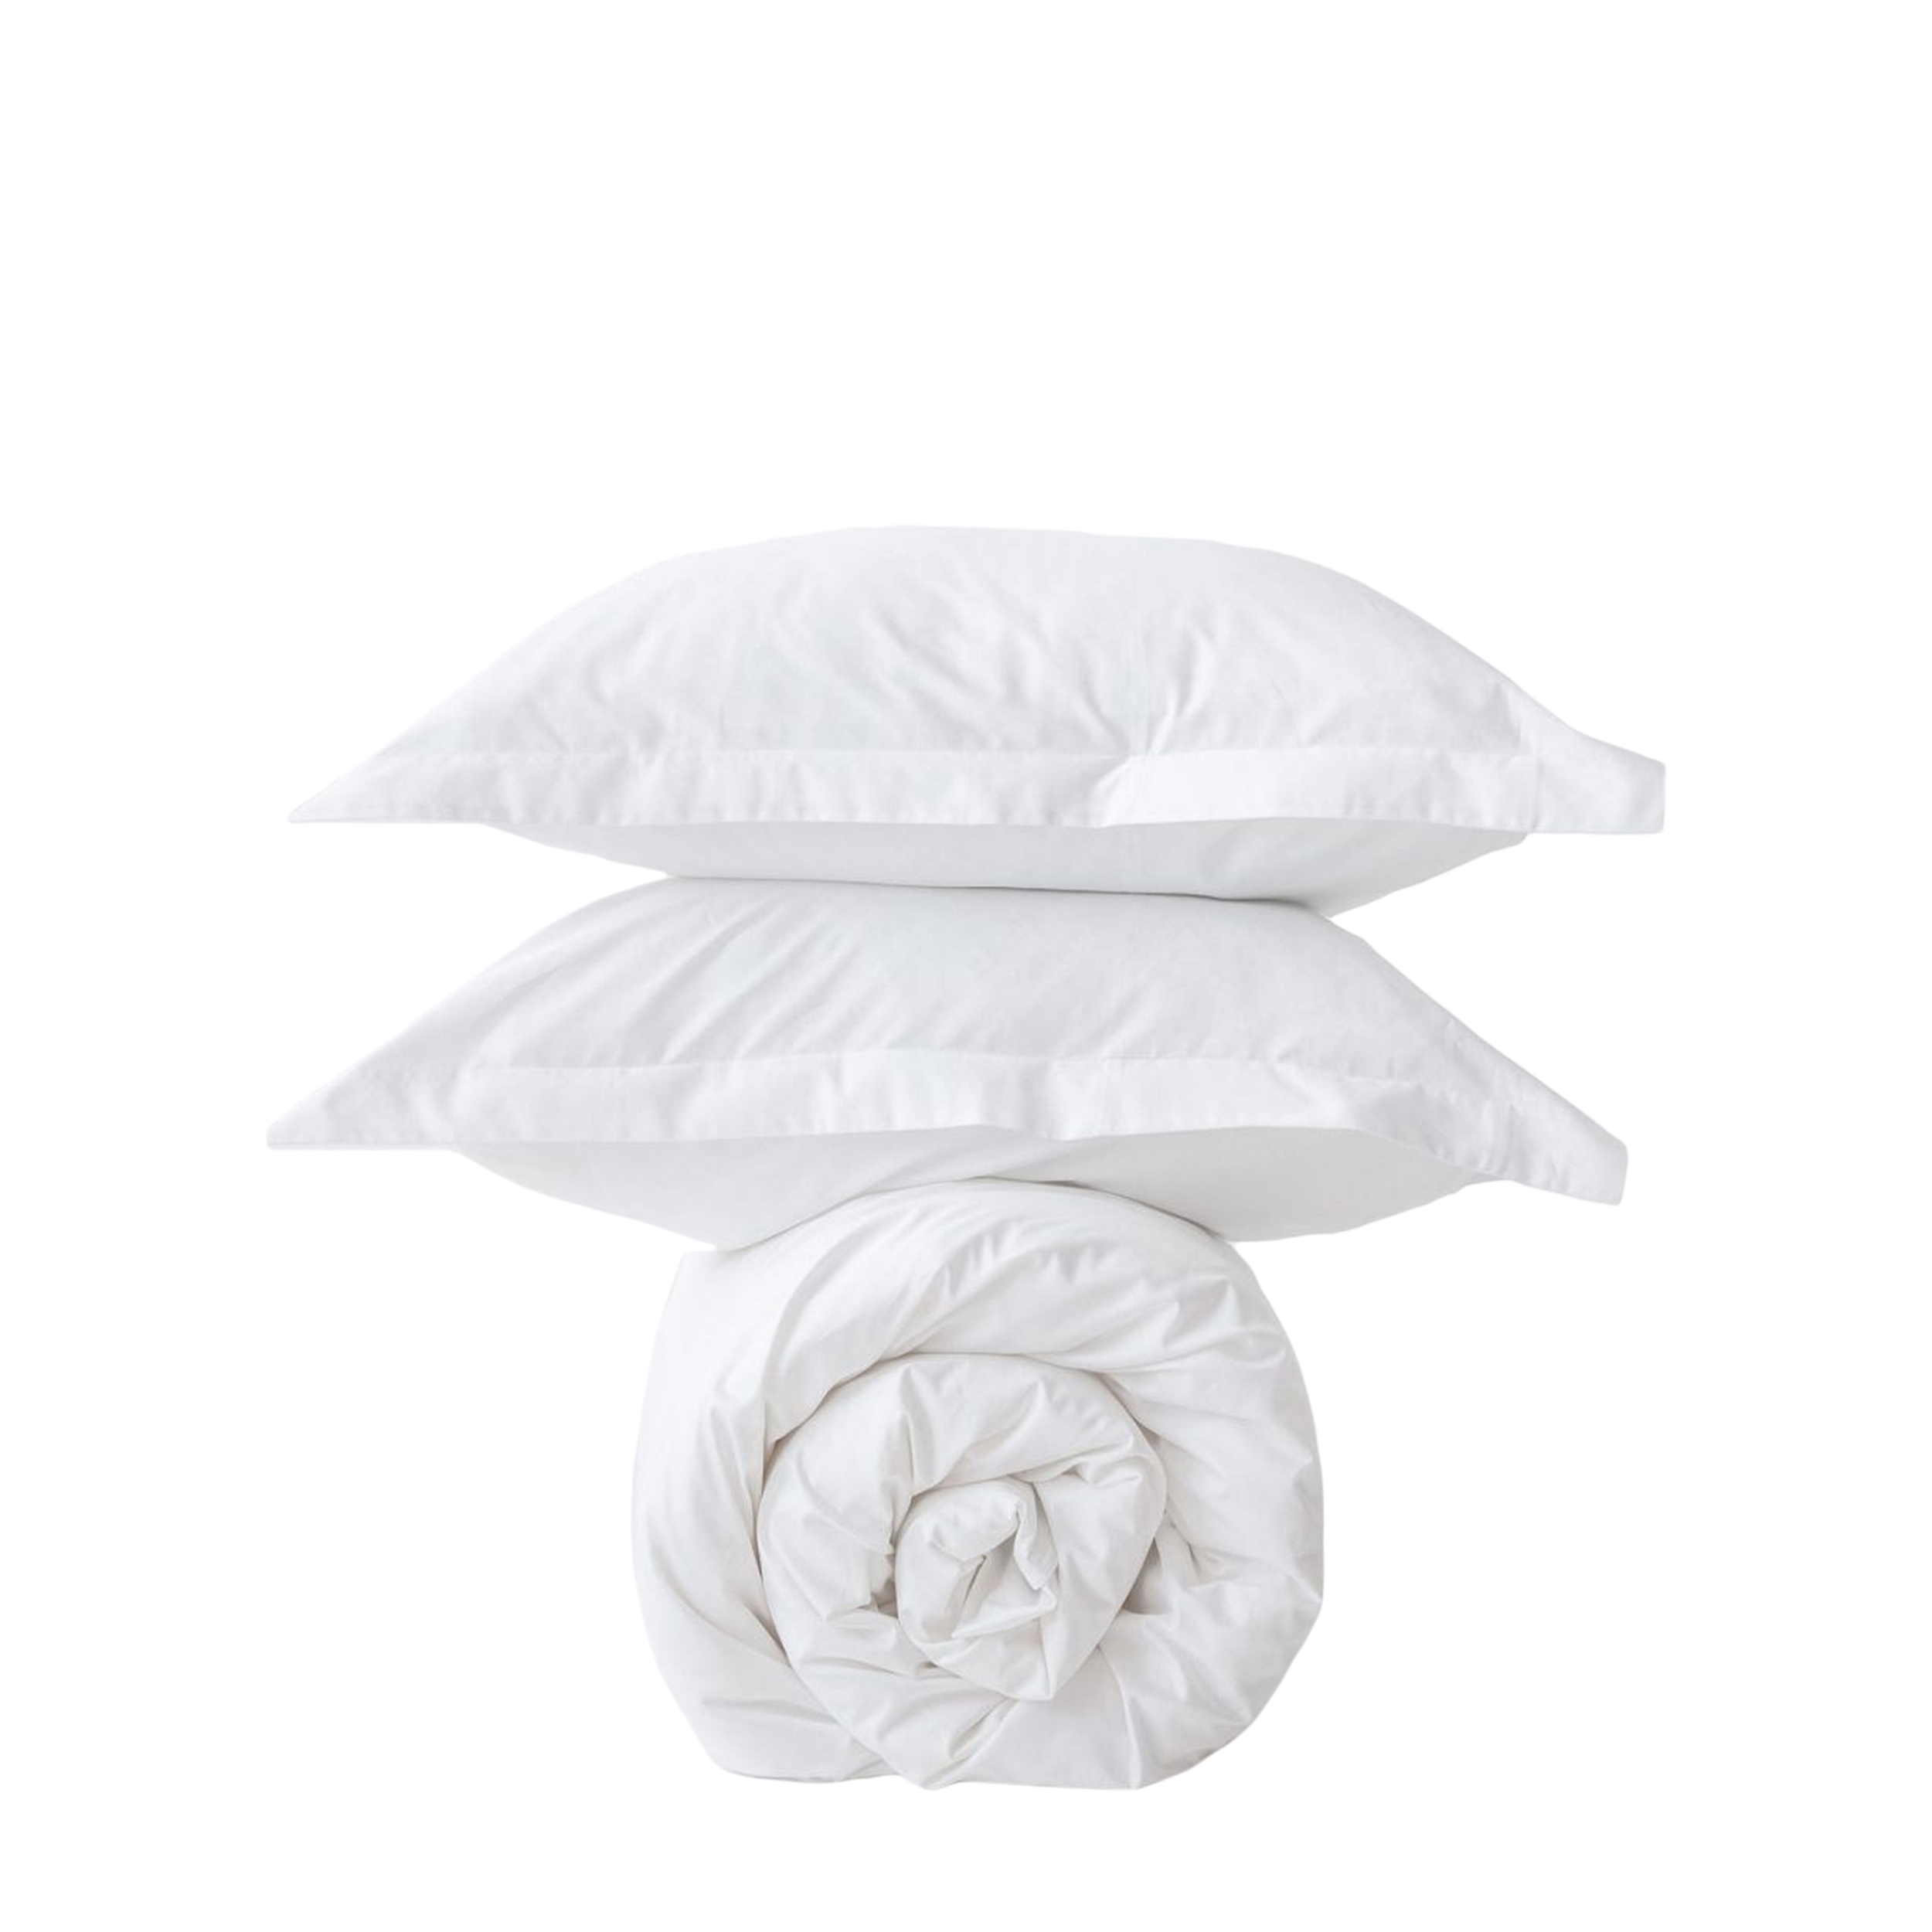 MORФEUS MORФEUS Комплект постельного белья Silk White, 1.5-спальный, сатин (150x200)